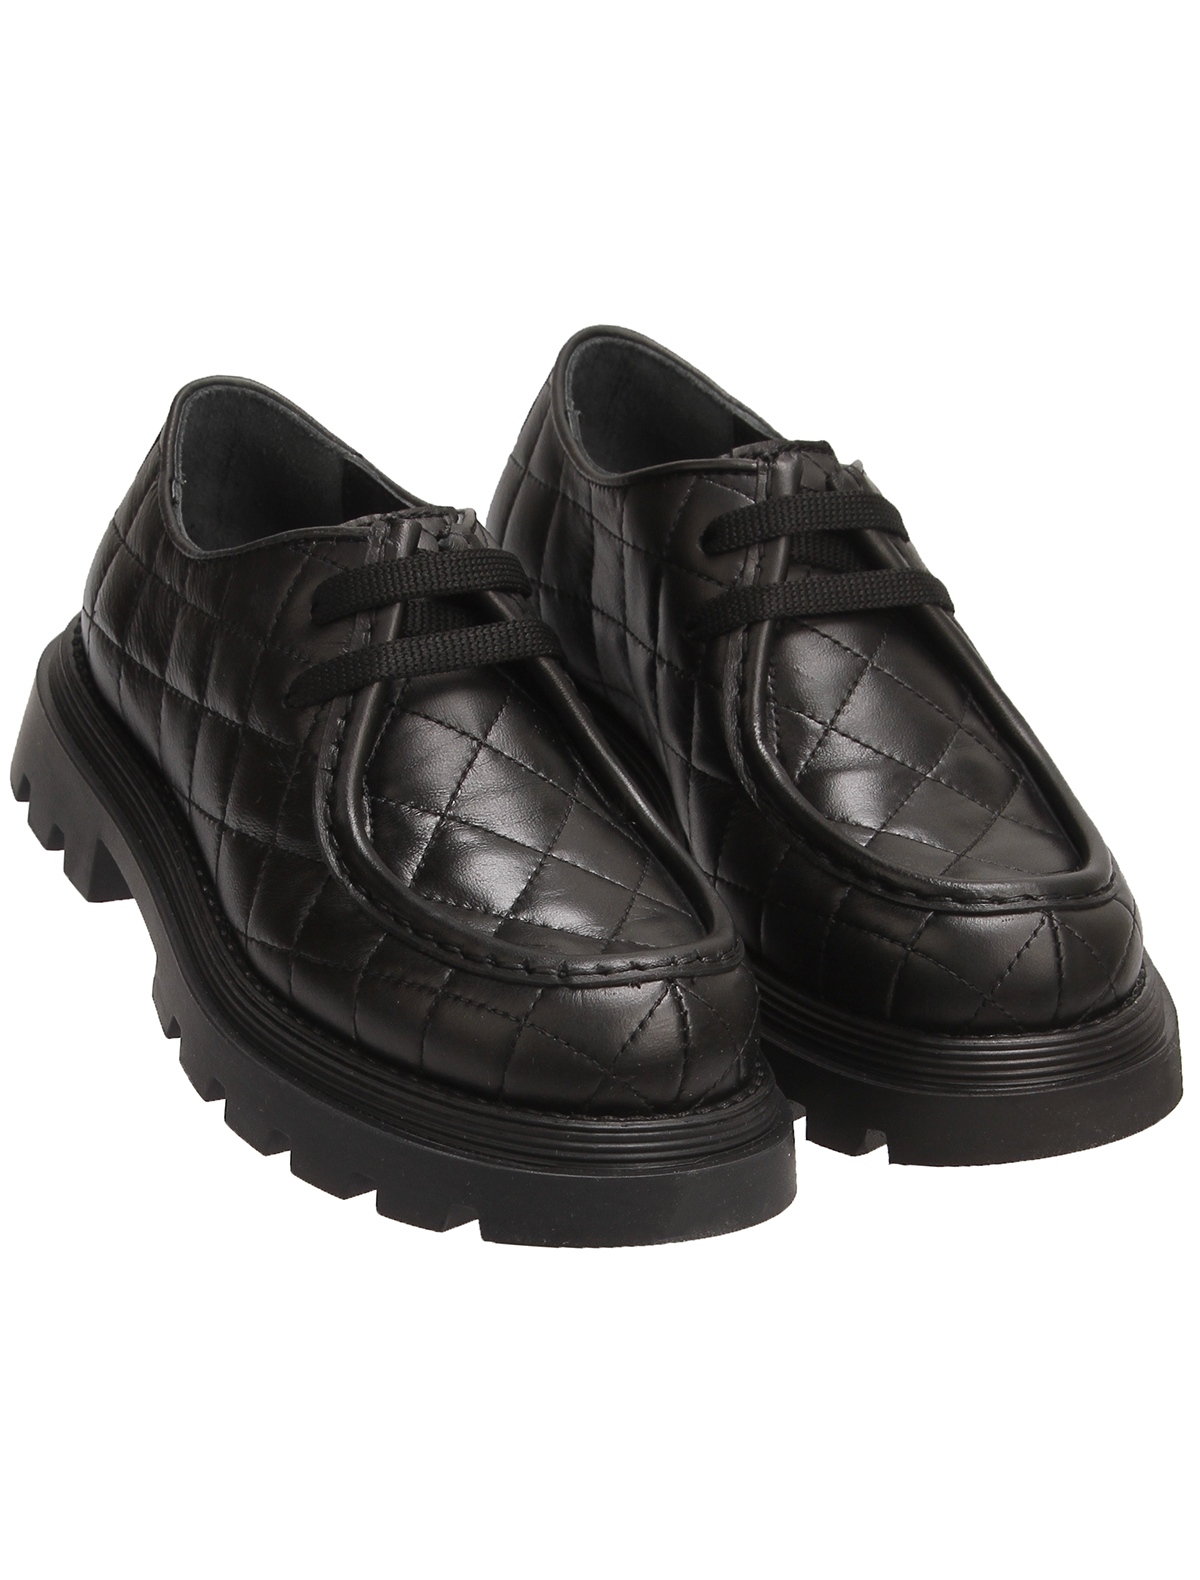 ботинки gallucci, черные